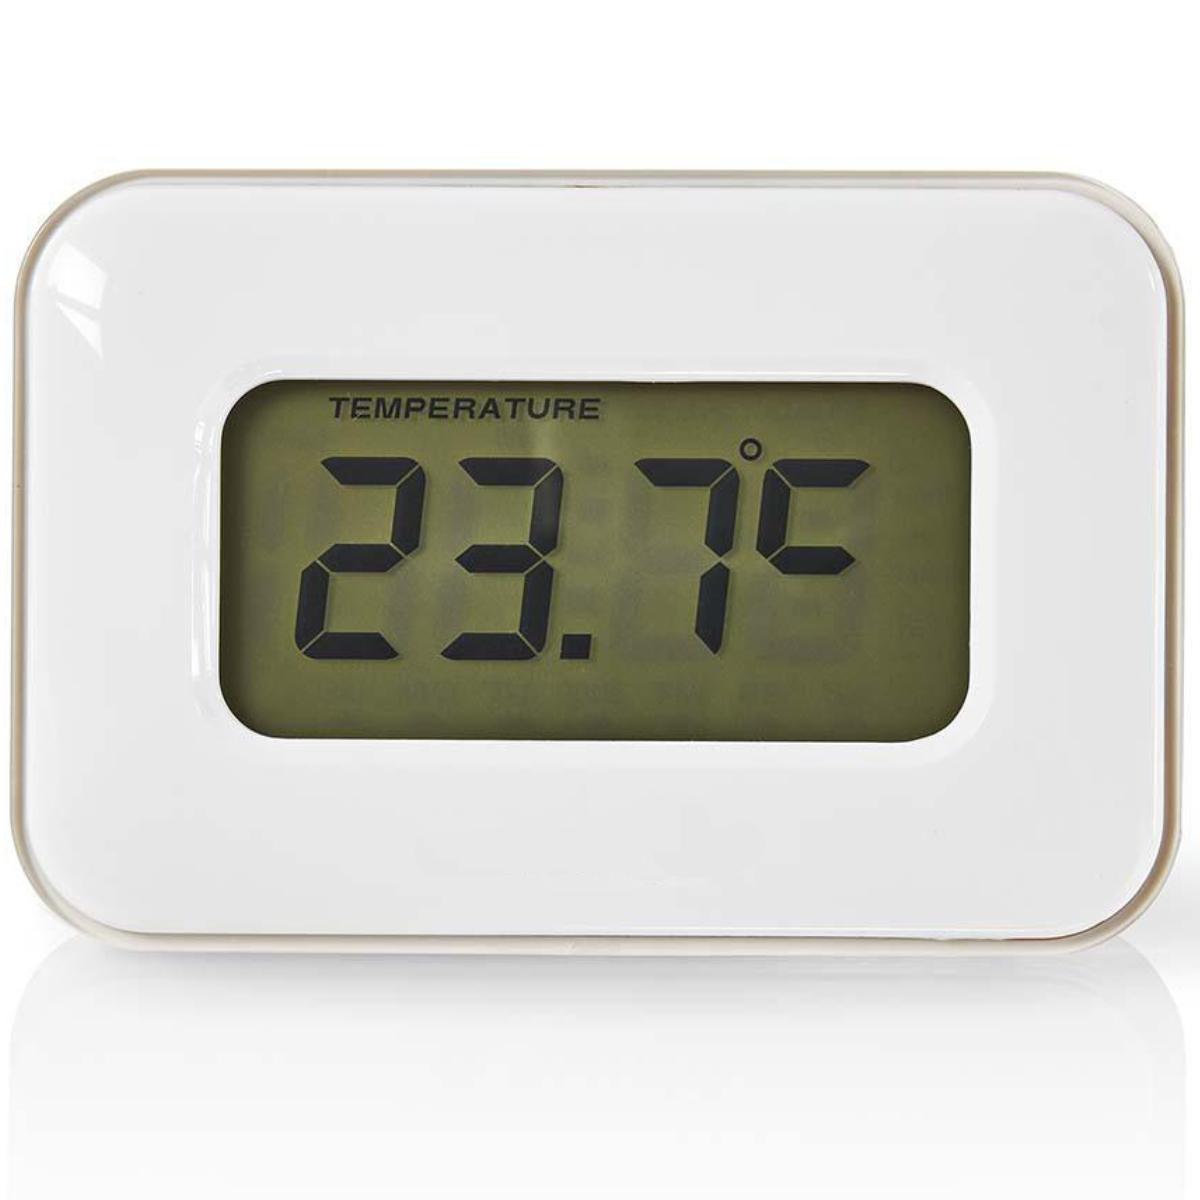 Digitale Alarmklok | Datum/Temperatuur | Kleurendisplay - Multifunctionele alarmklok die tijd, datum en weergeeft en voorzien is van een alarm timer. Iedere functie licht op een andere kleur, wat